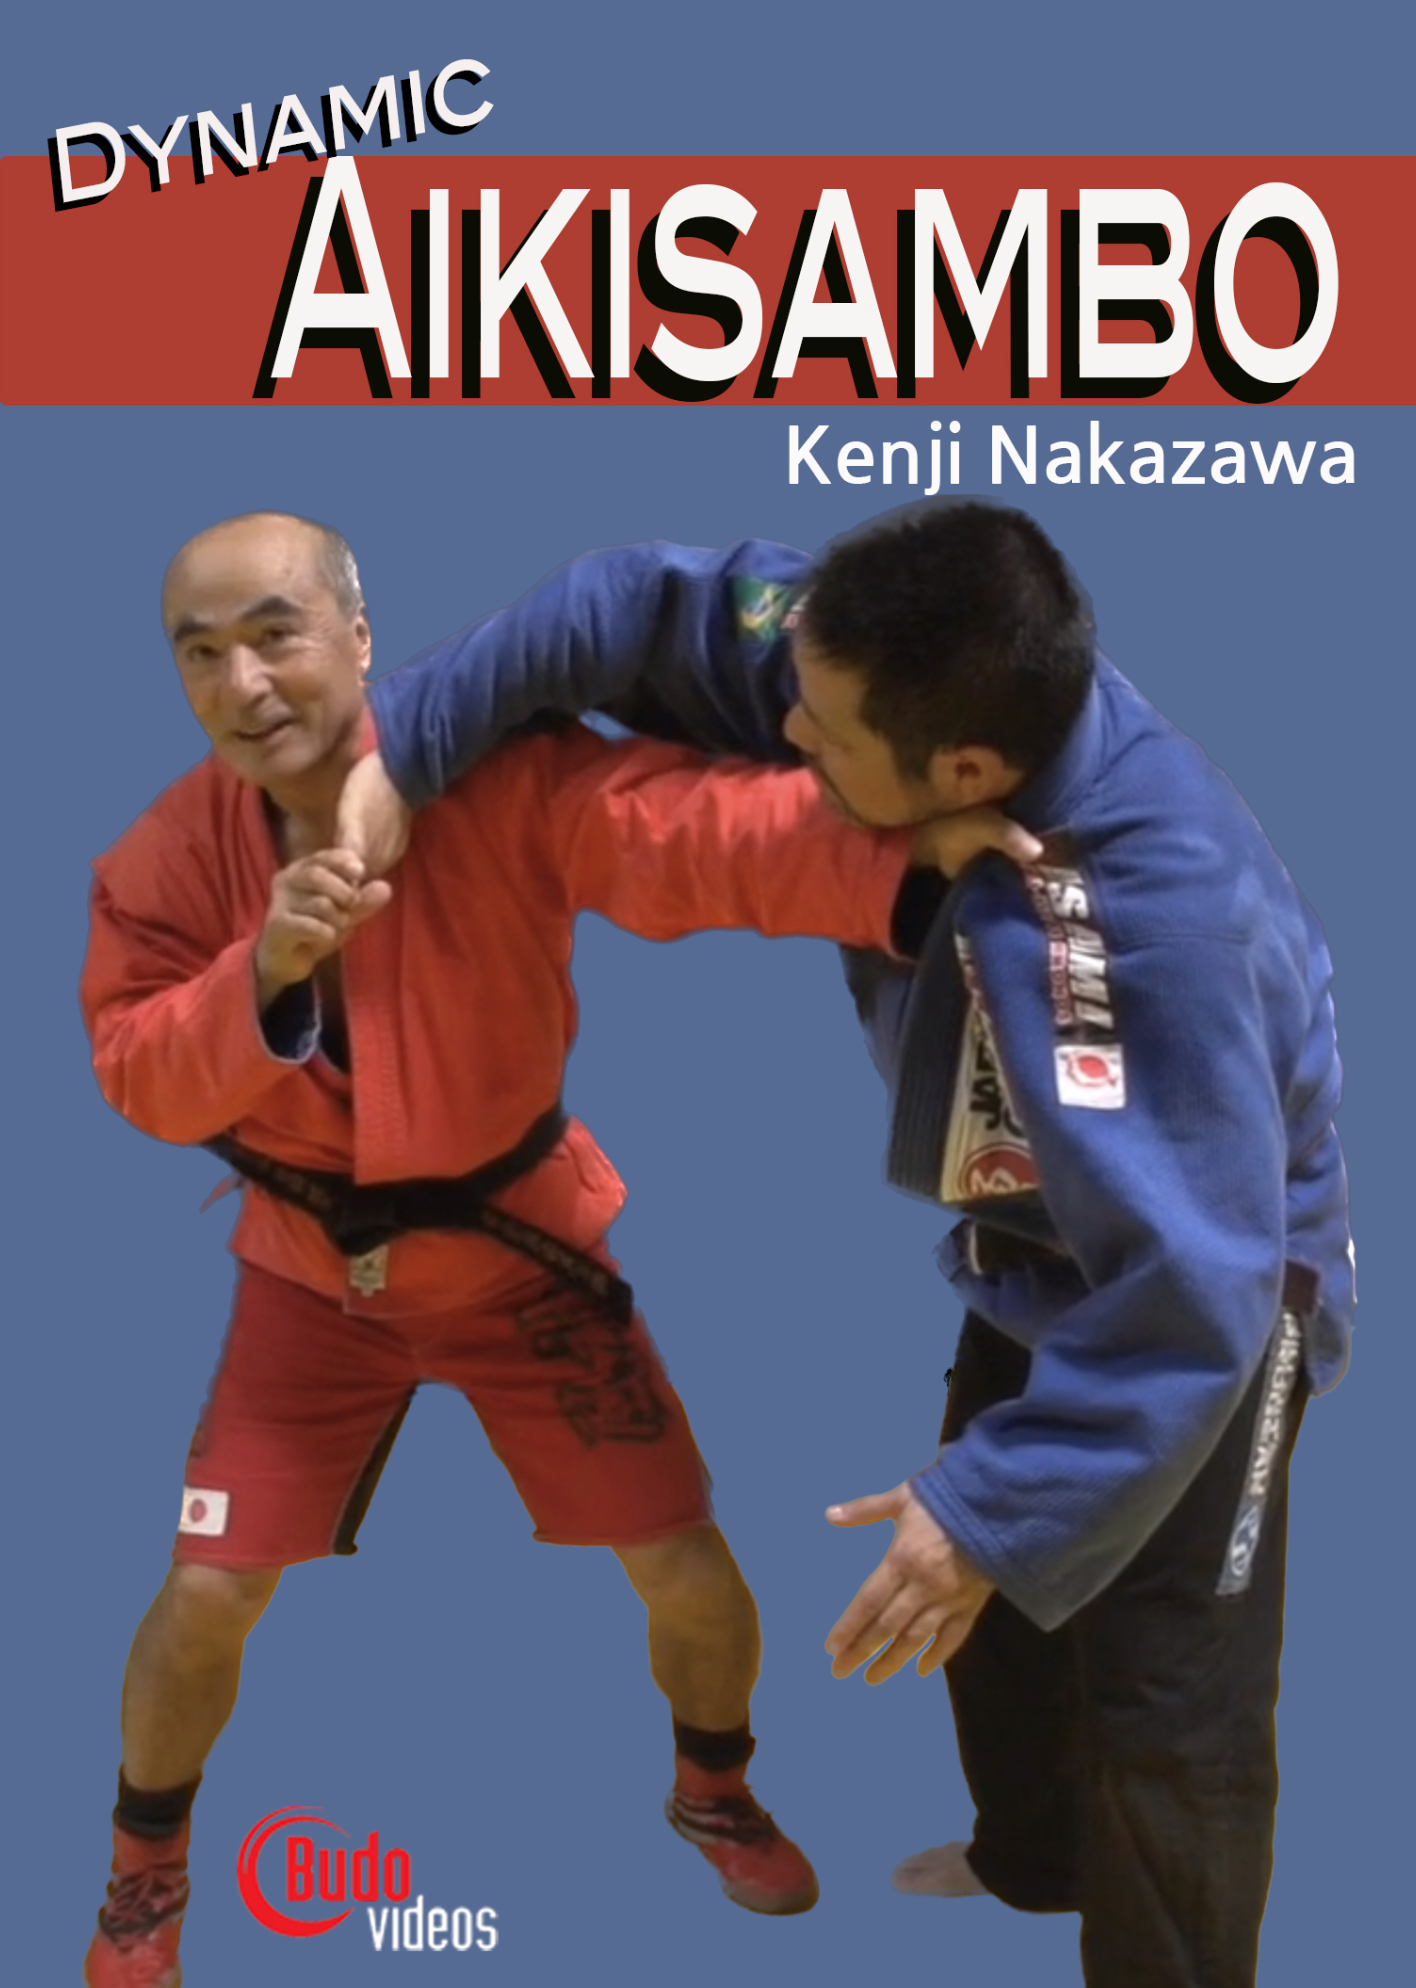 Dynamic Aikisambo with Kenji Nakazawa (On Demand)